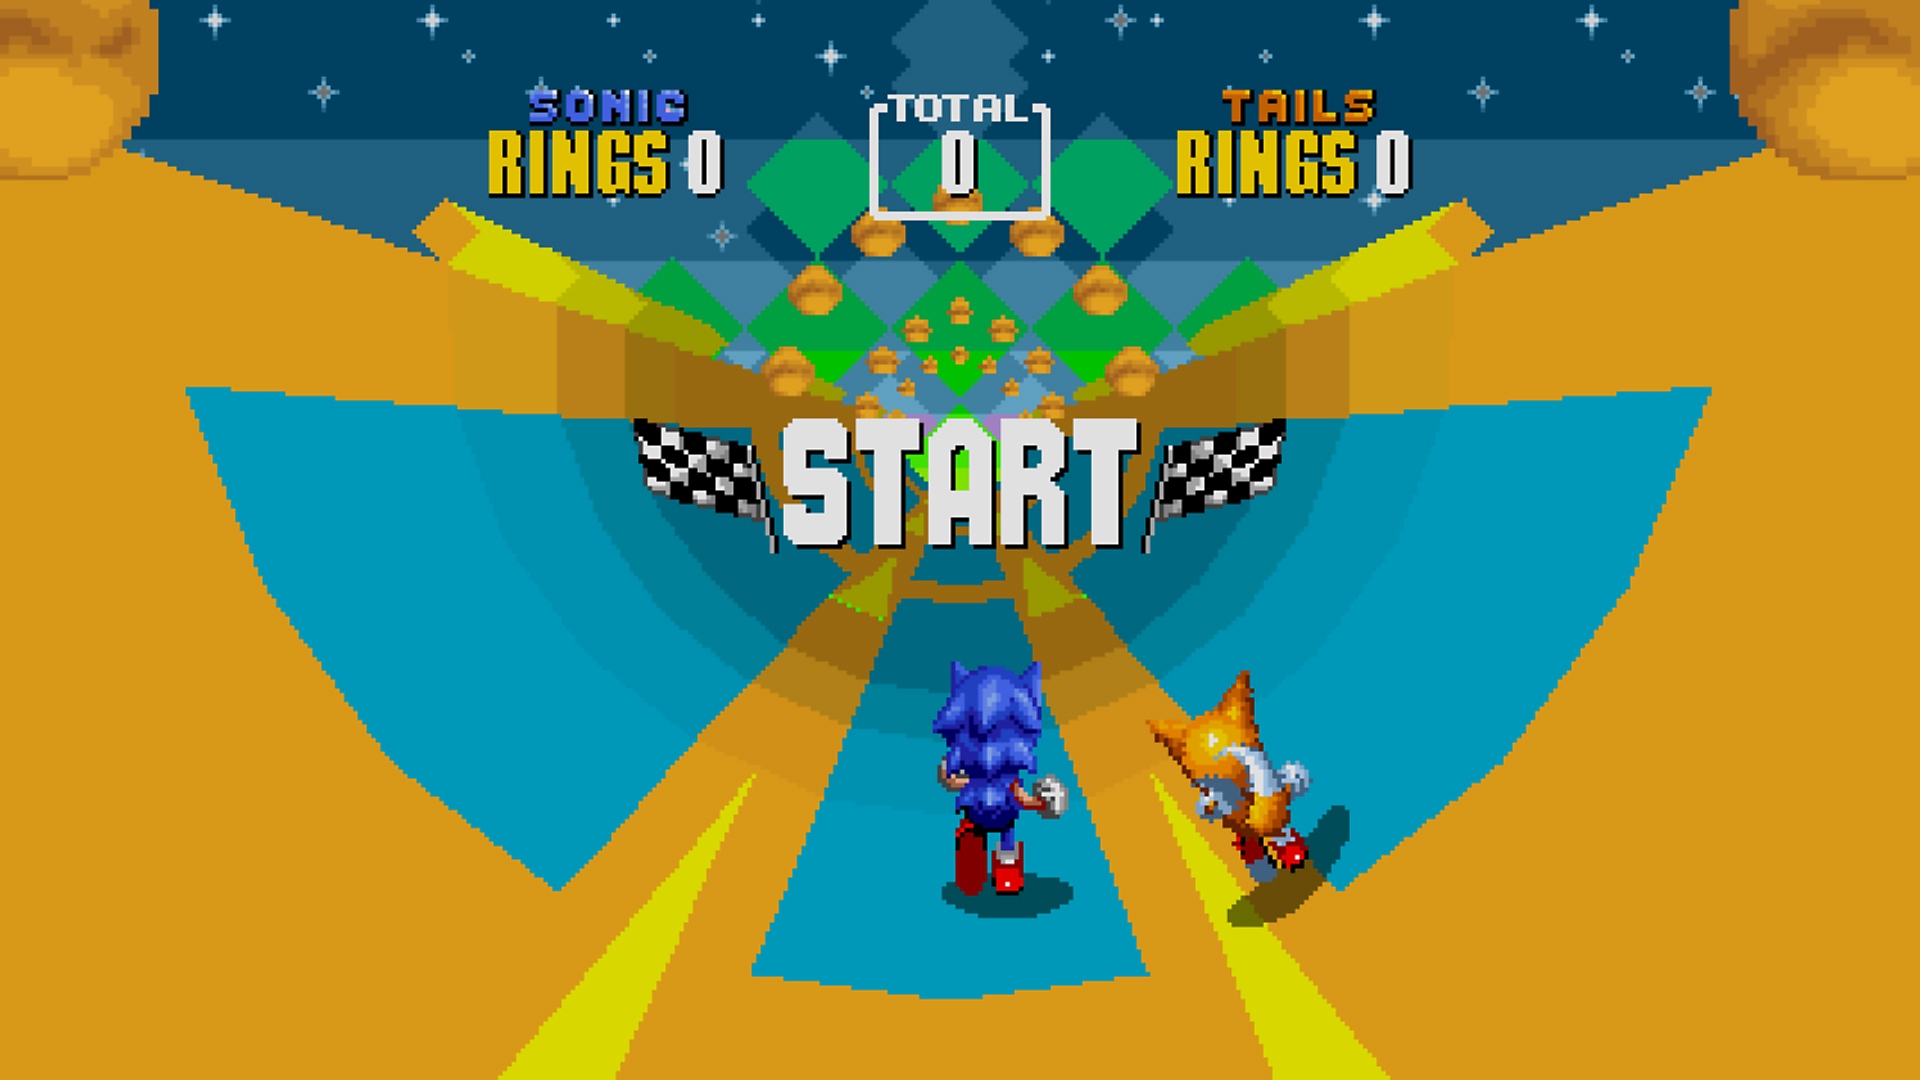 Sonic Origins - Capture d'écran montrant Sonic et Tails courant à travers un niveau